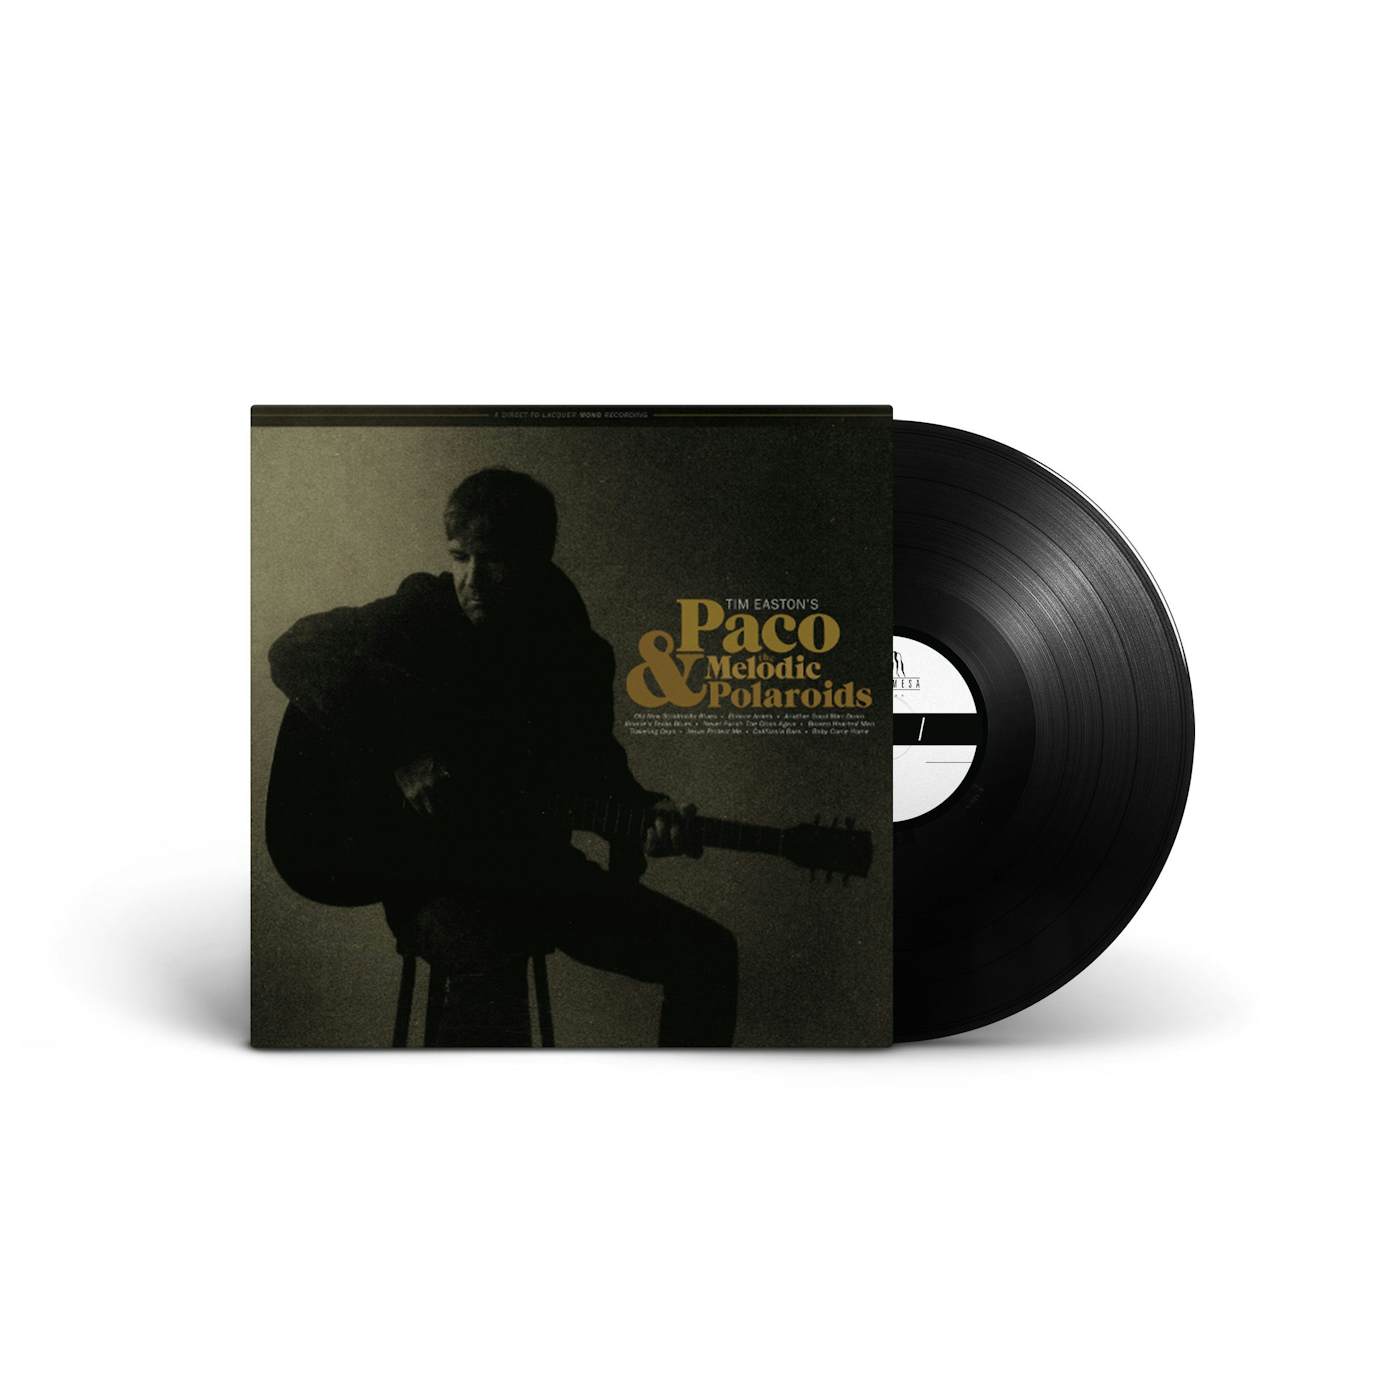 Tim Easton Paco & The Melodic Polaroids LP (Vinyl)